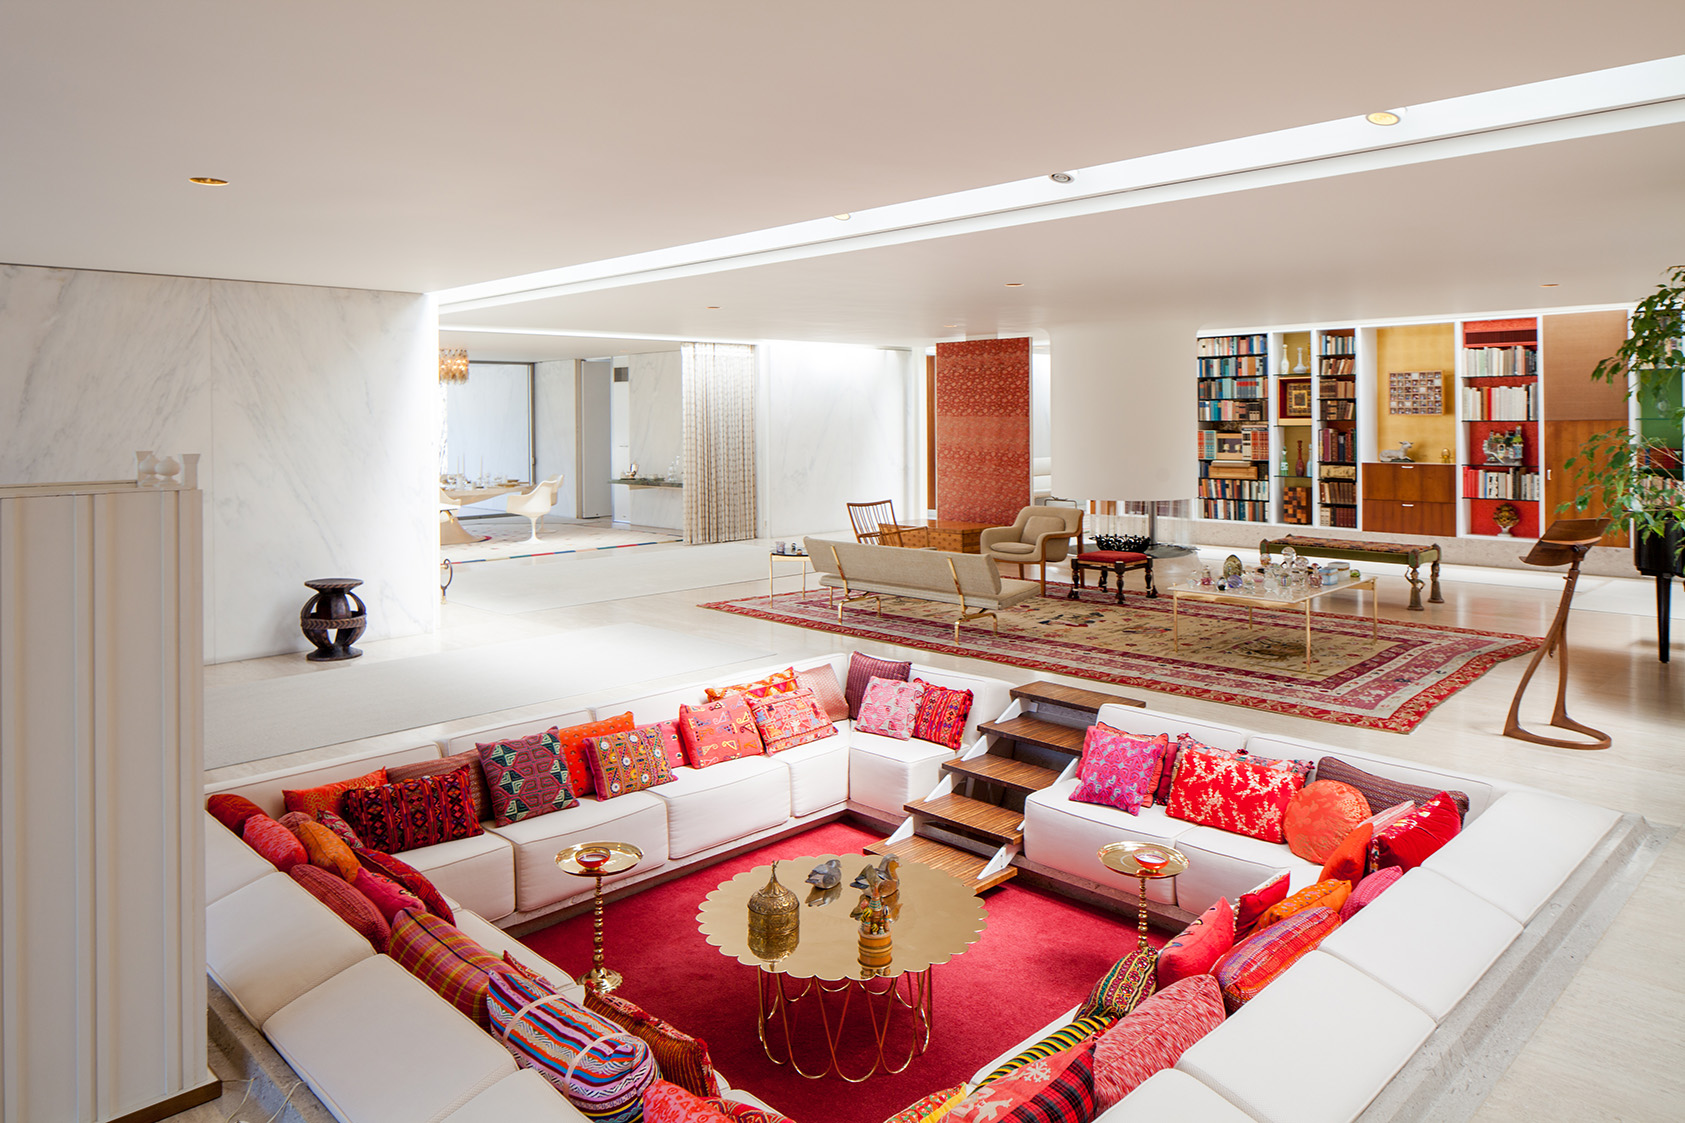 Retro Sunken Living Room Design Inspiration | domino